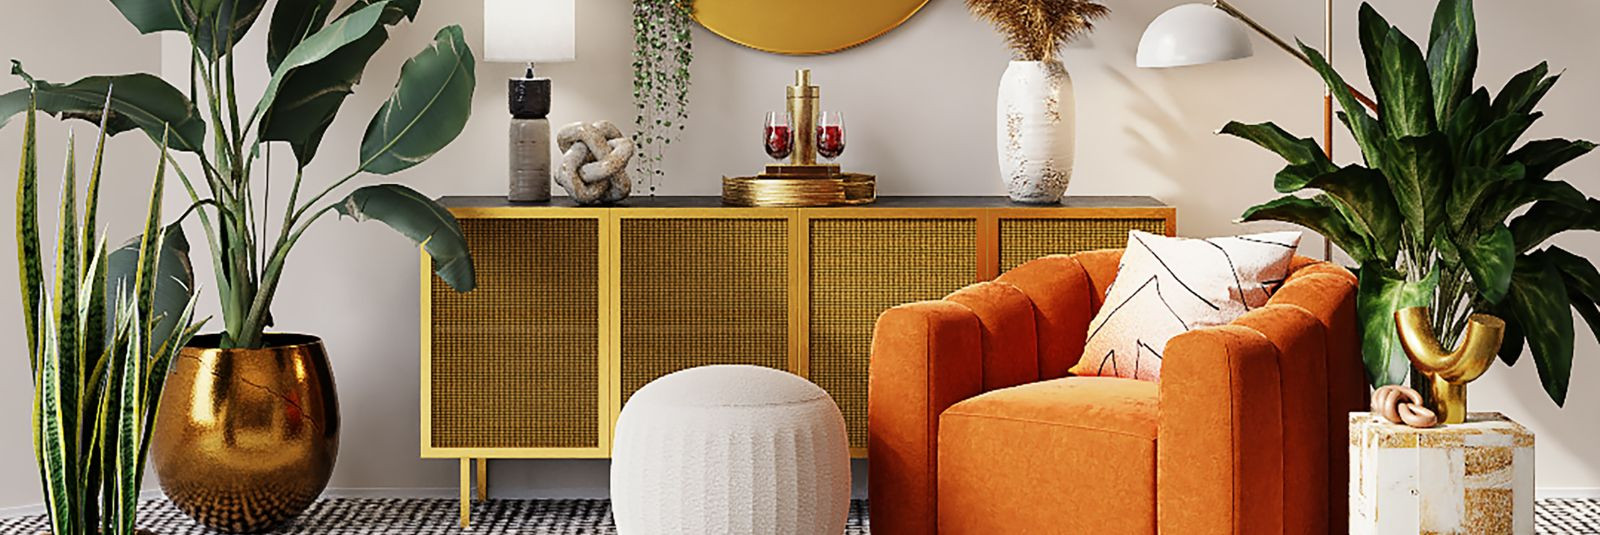 Kui soovite oma kodu sisustada unikaalse ja kvaliteetse pehme mööbliga, siis olete leidnud õige partneri. DI sohva OÜ on ettevõte, mis on spetsialiseerunud erit